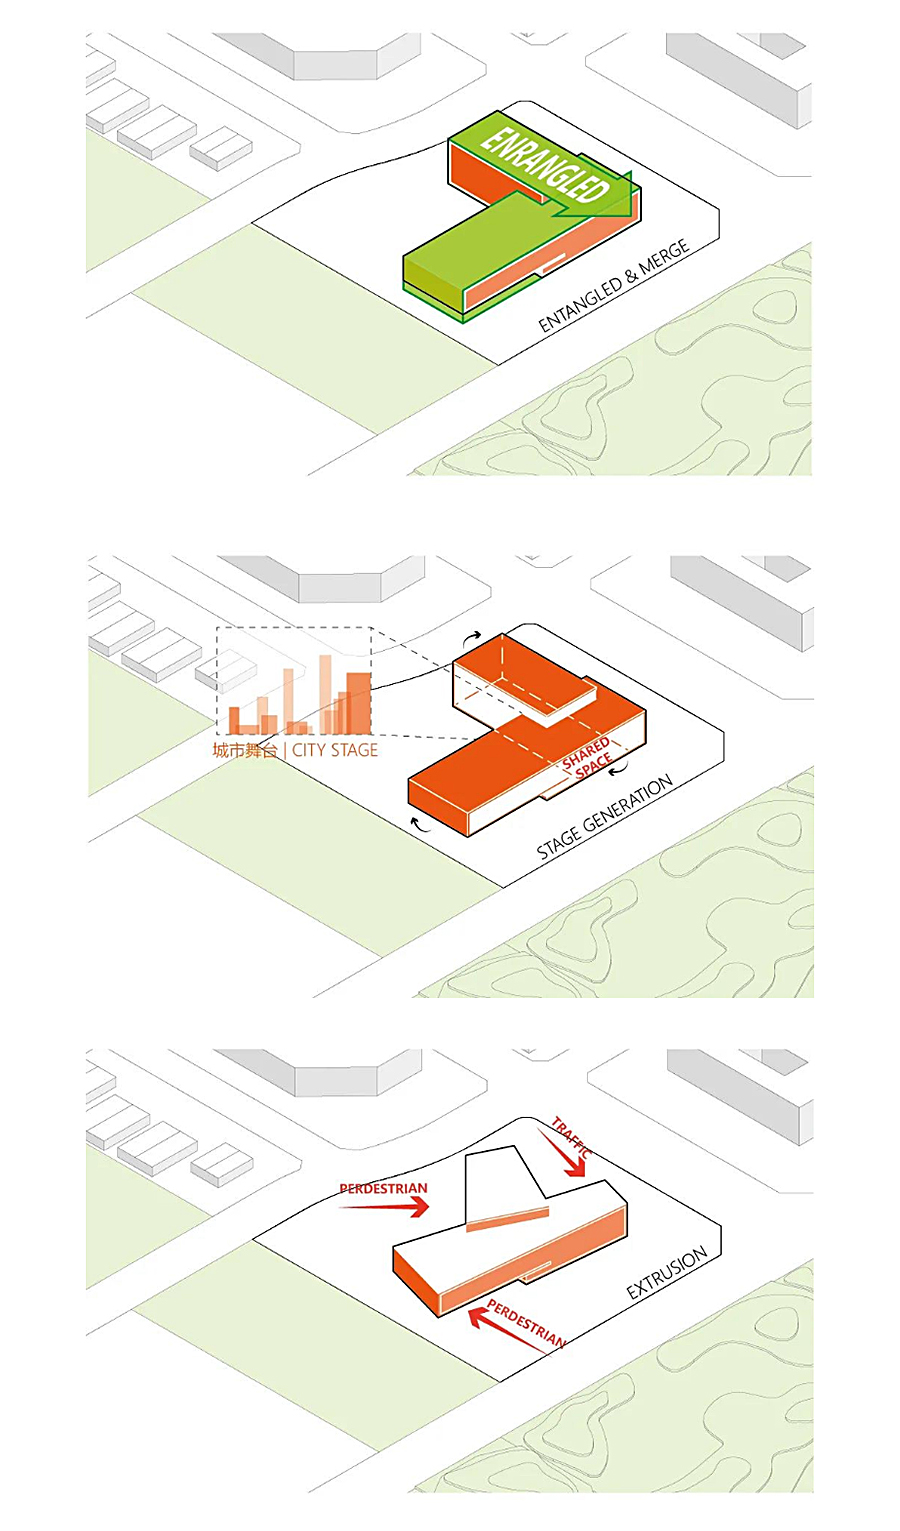 一个建筑代表一座新城-_-成都招商天府新区城市规划展示馆_0013_图层-14.jpg